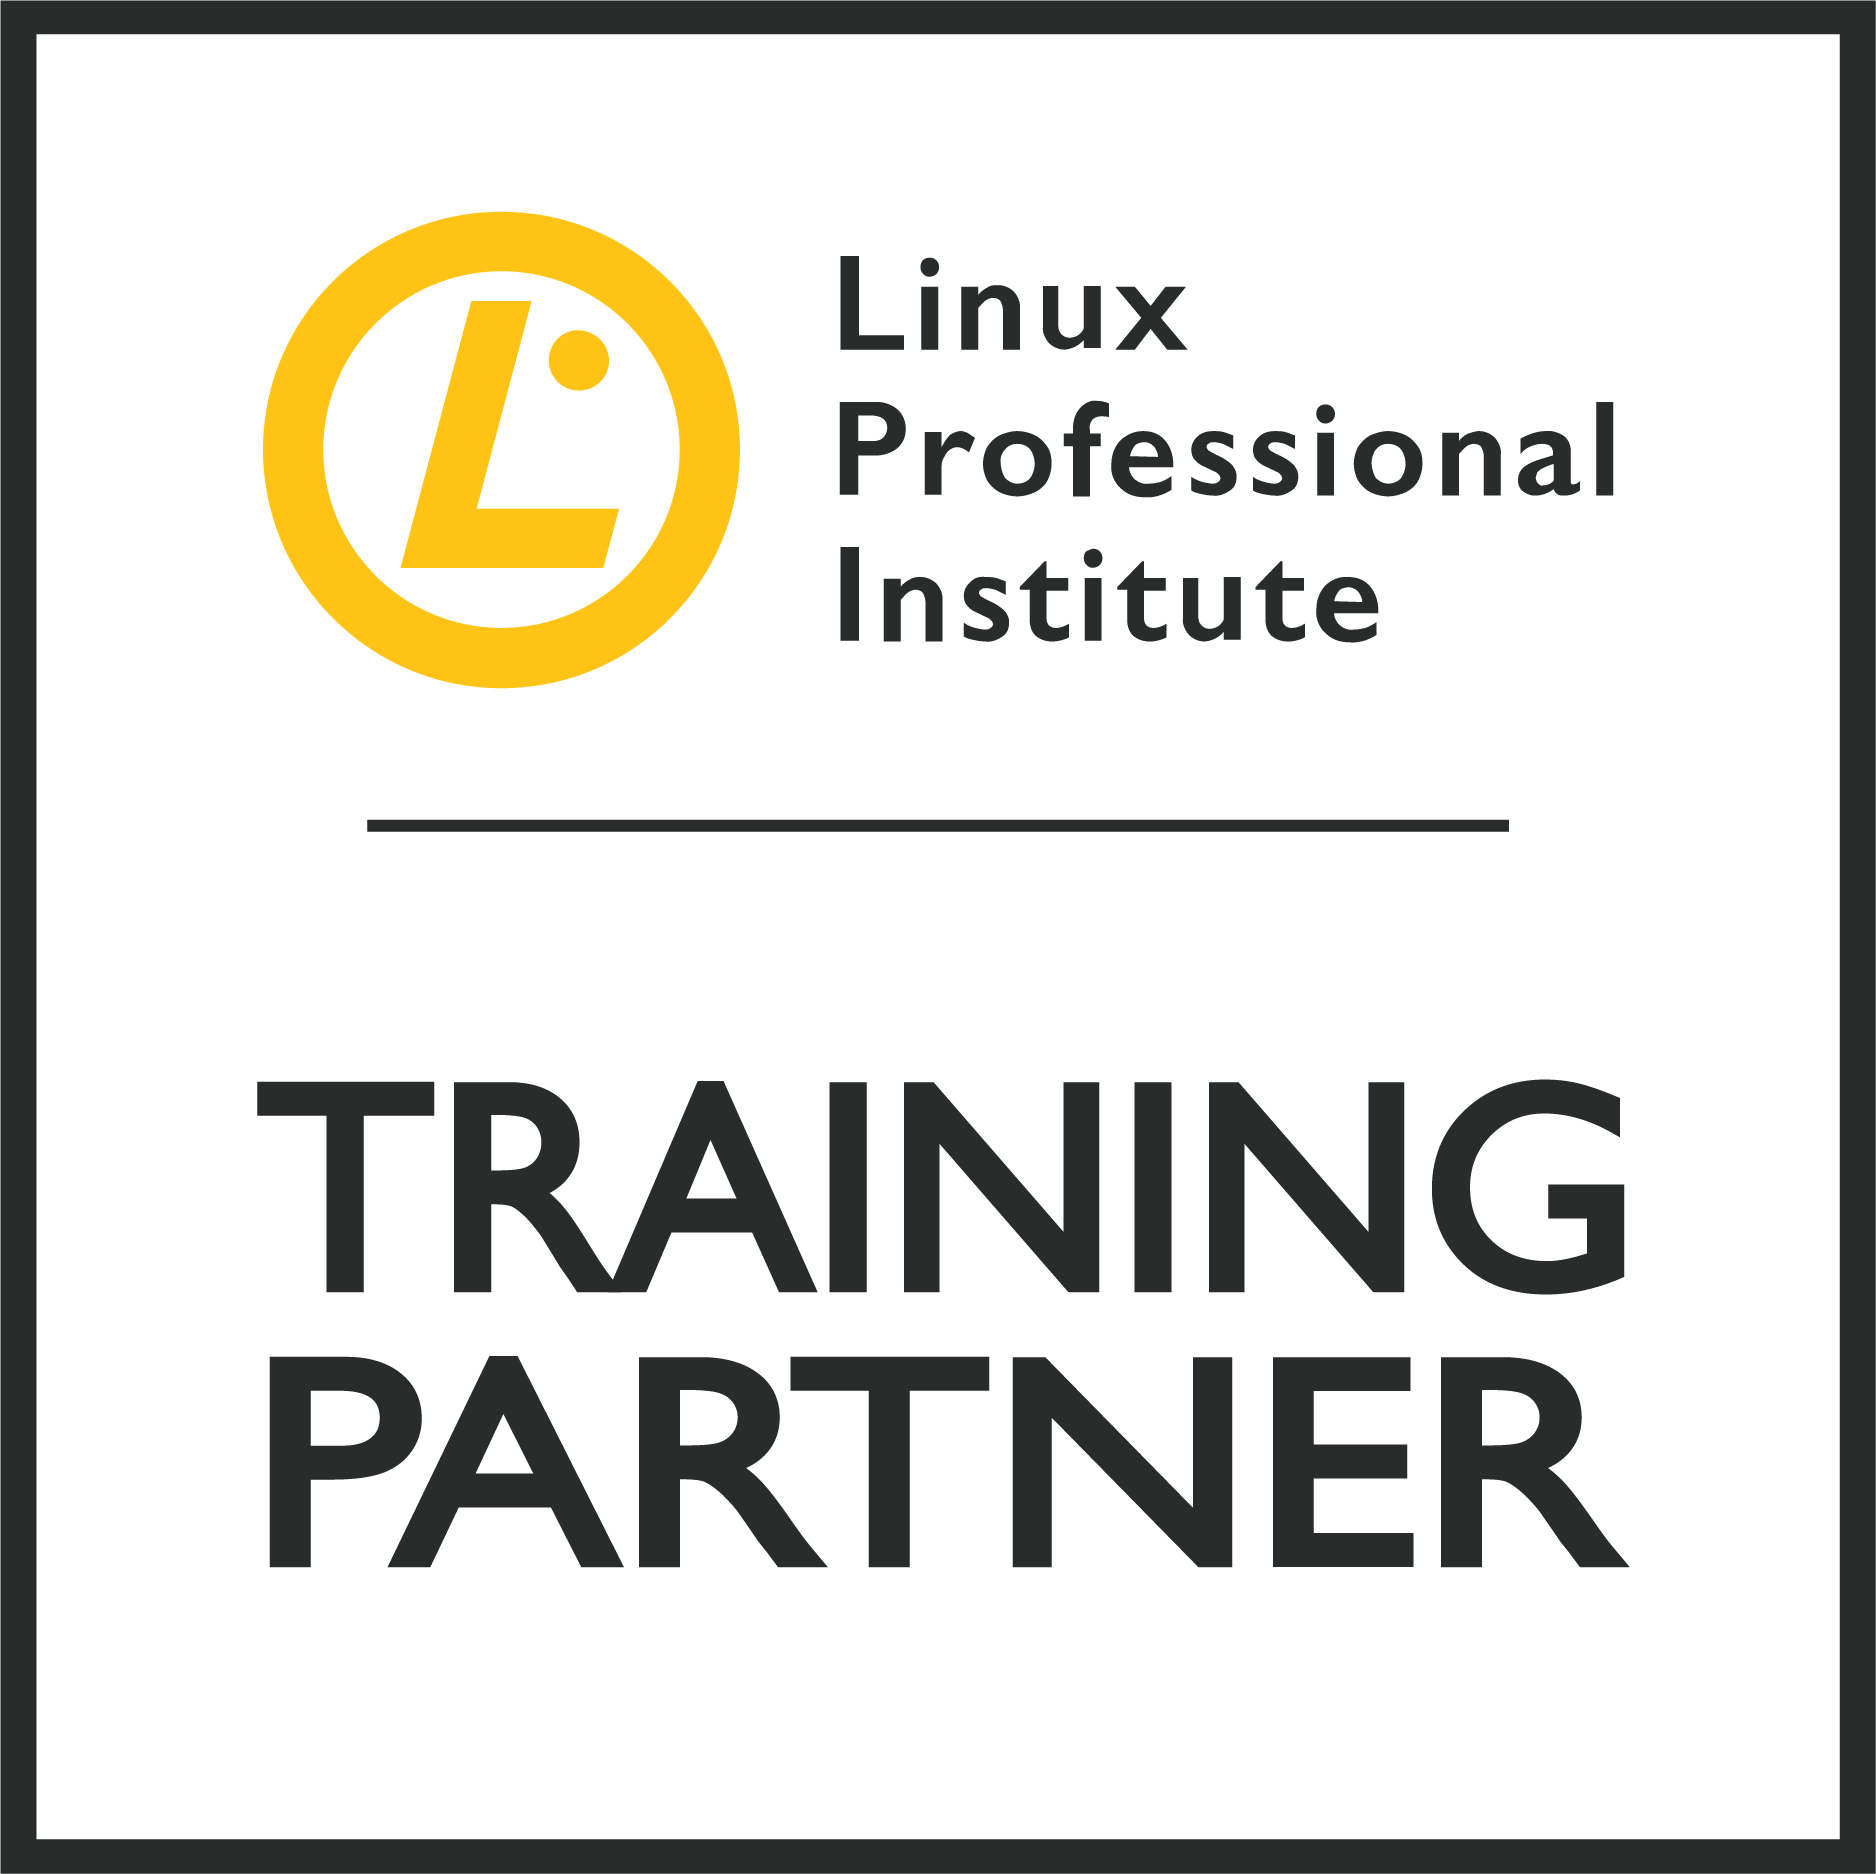 Partner Portal Training